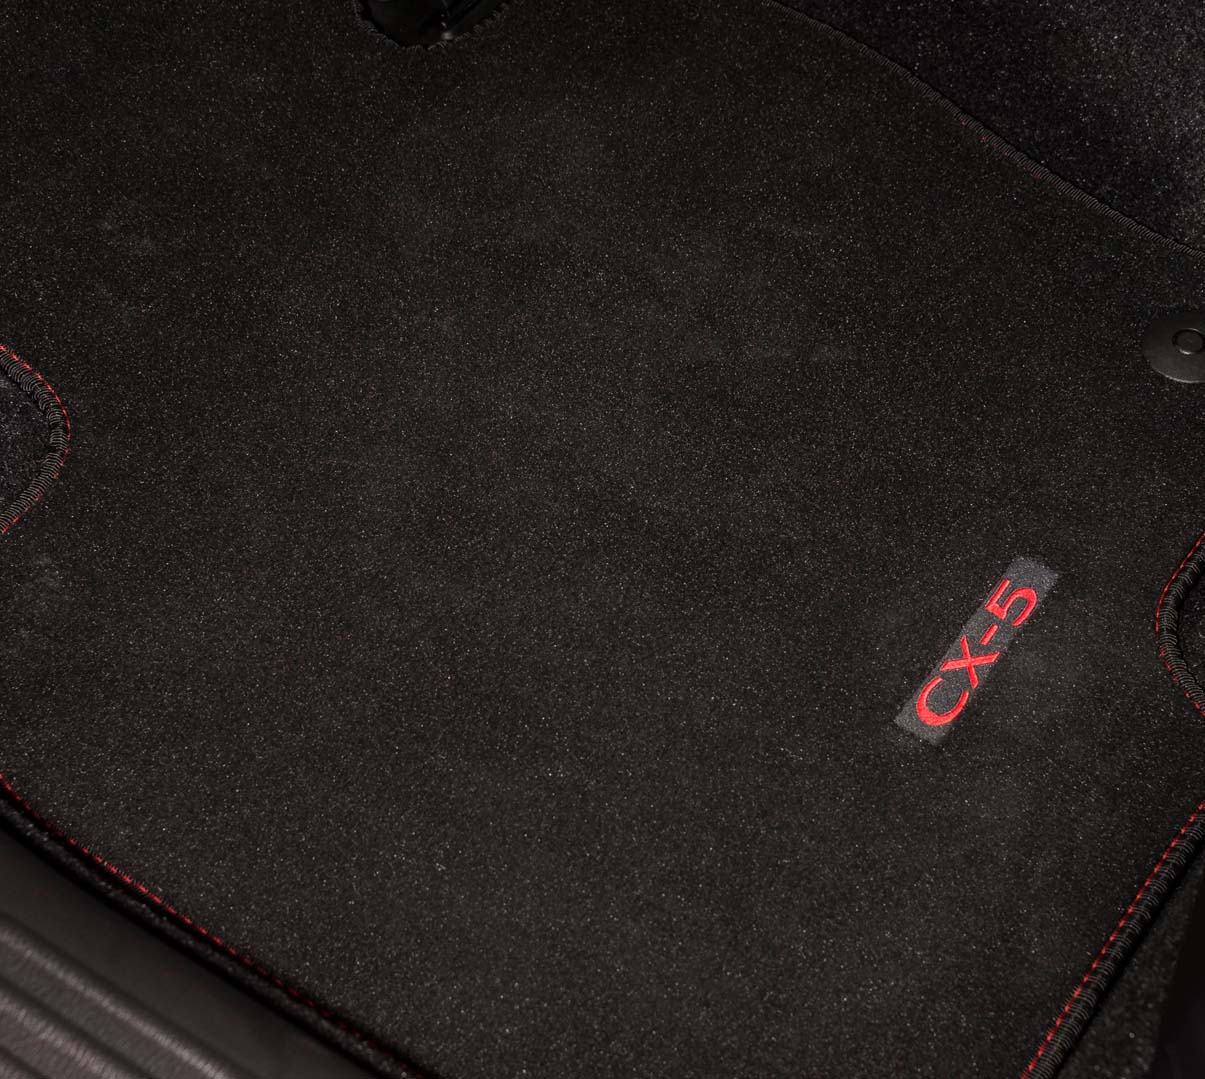 Πατάκια με το λογότυπο CX-5 διατίθενται κατά παραγγελία για το δικό σας Mazda CX-5.